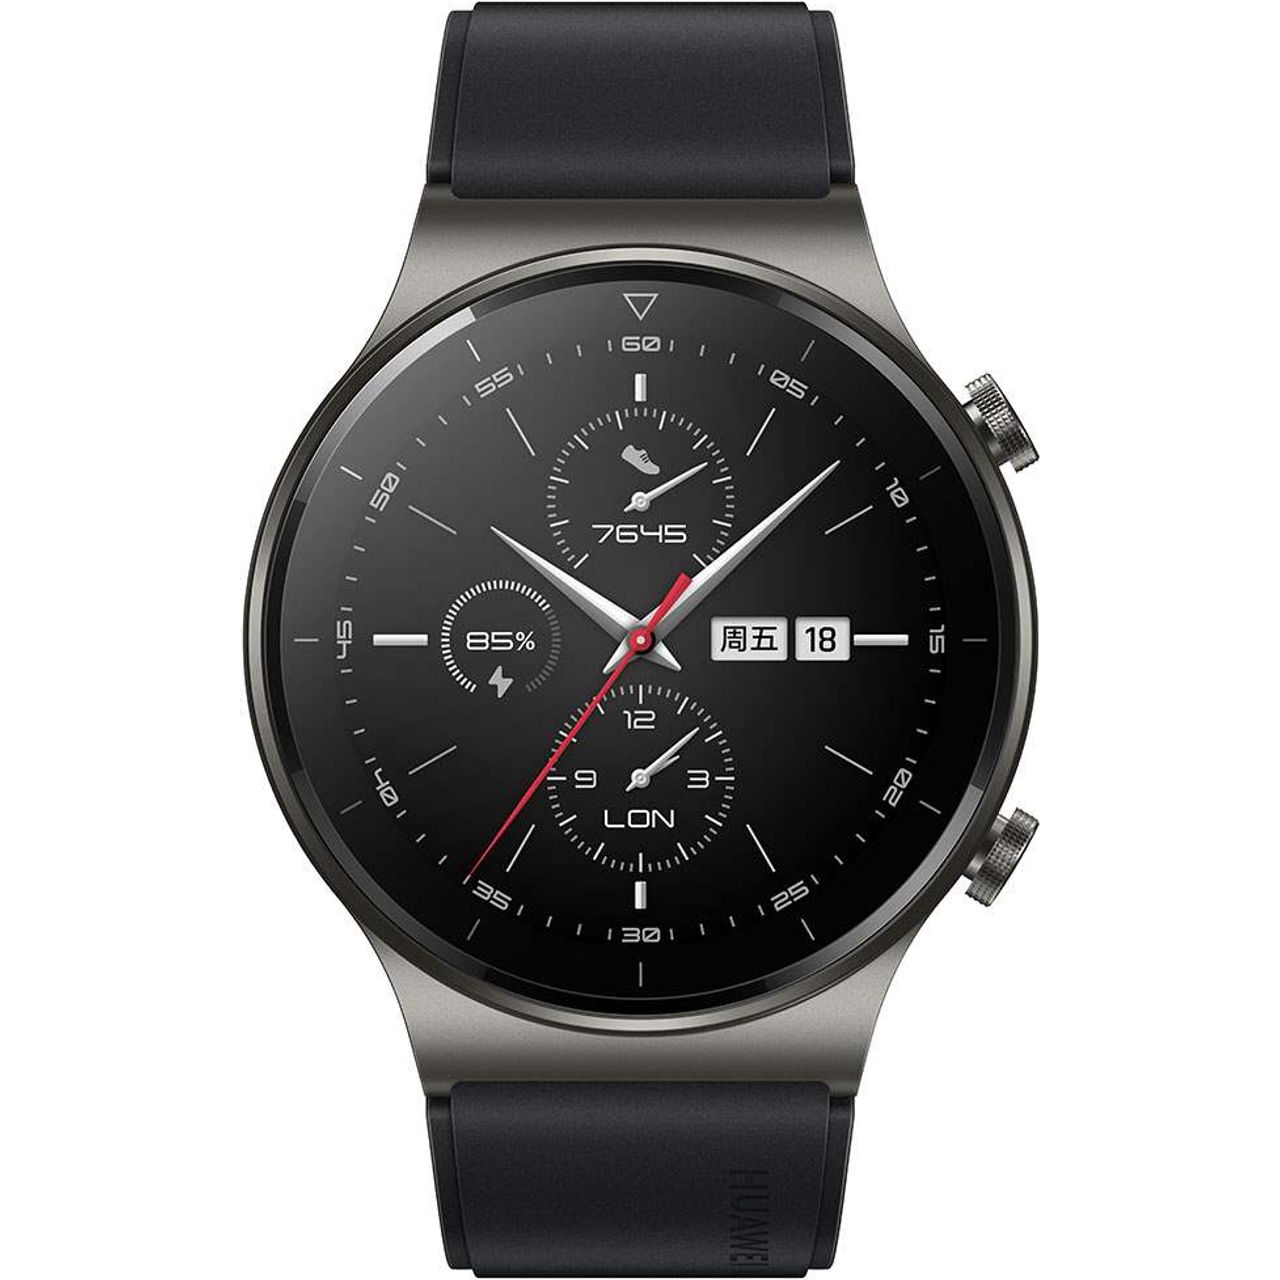 Huawei GT 2 Pro Smart Watch Review